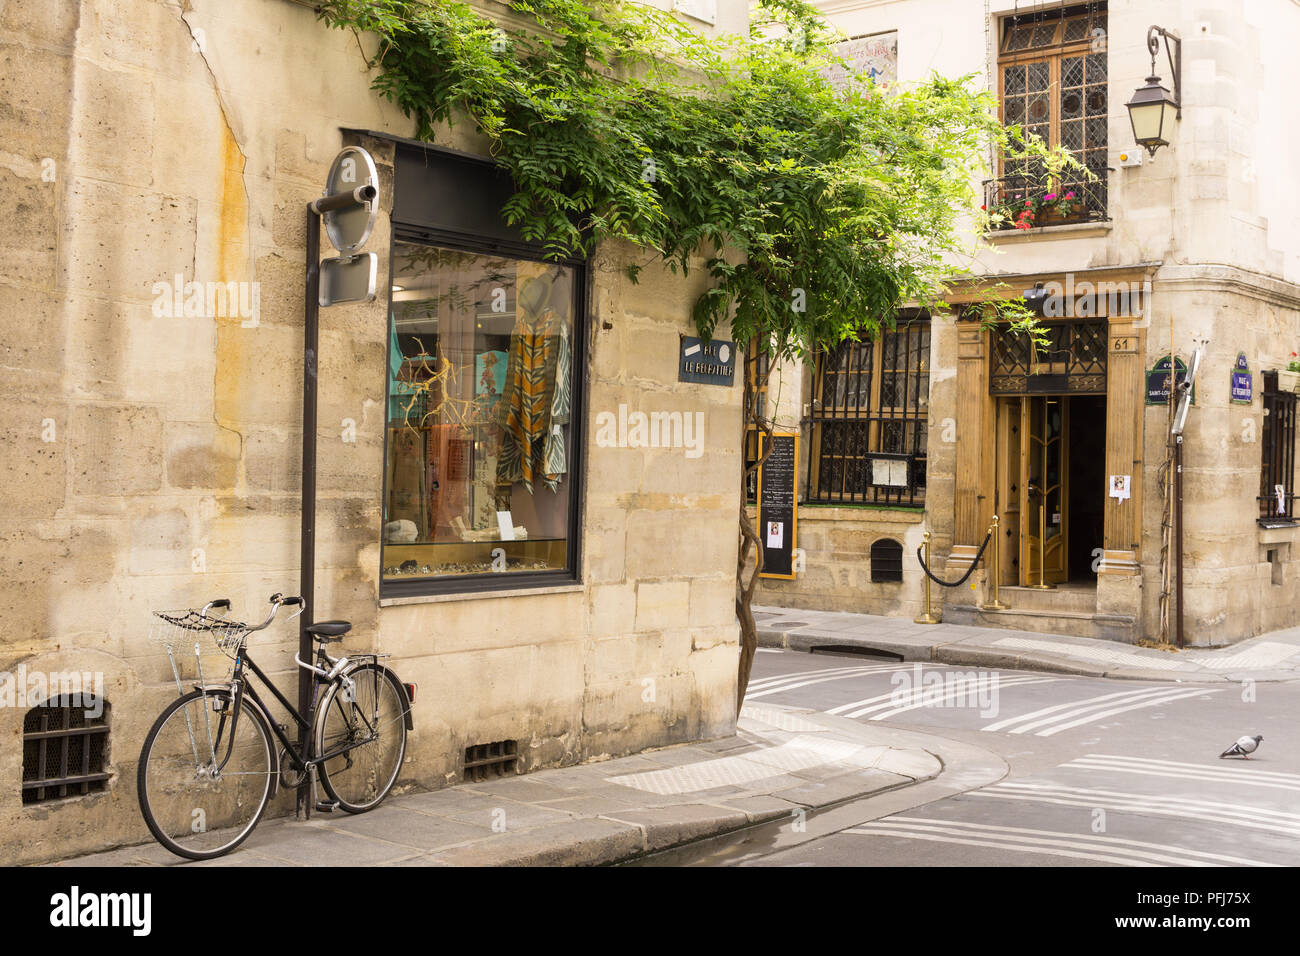 Paris mit dem Fahrrad - Geparkte Fahrräder in einer ruhigen Pariser Straße auf der Ile Saint Louis. Frankreich, Europa. Stockfoto